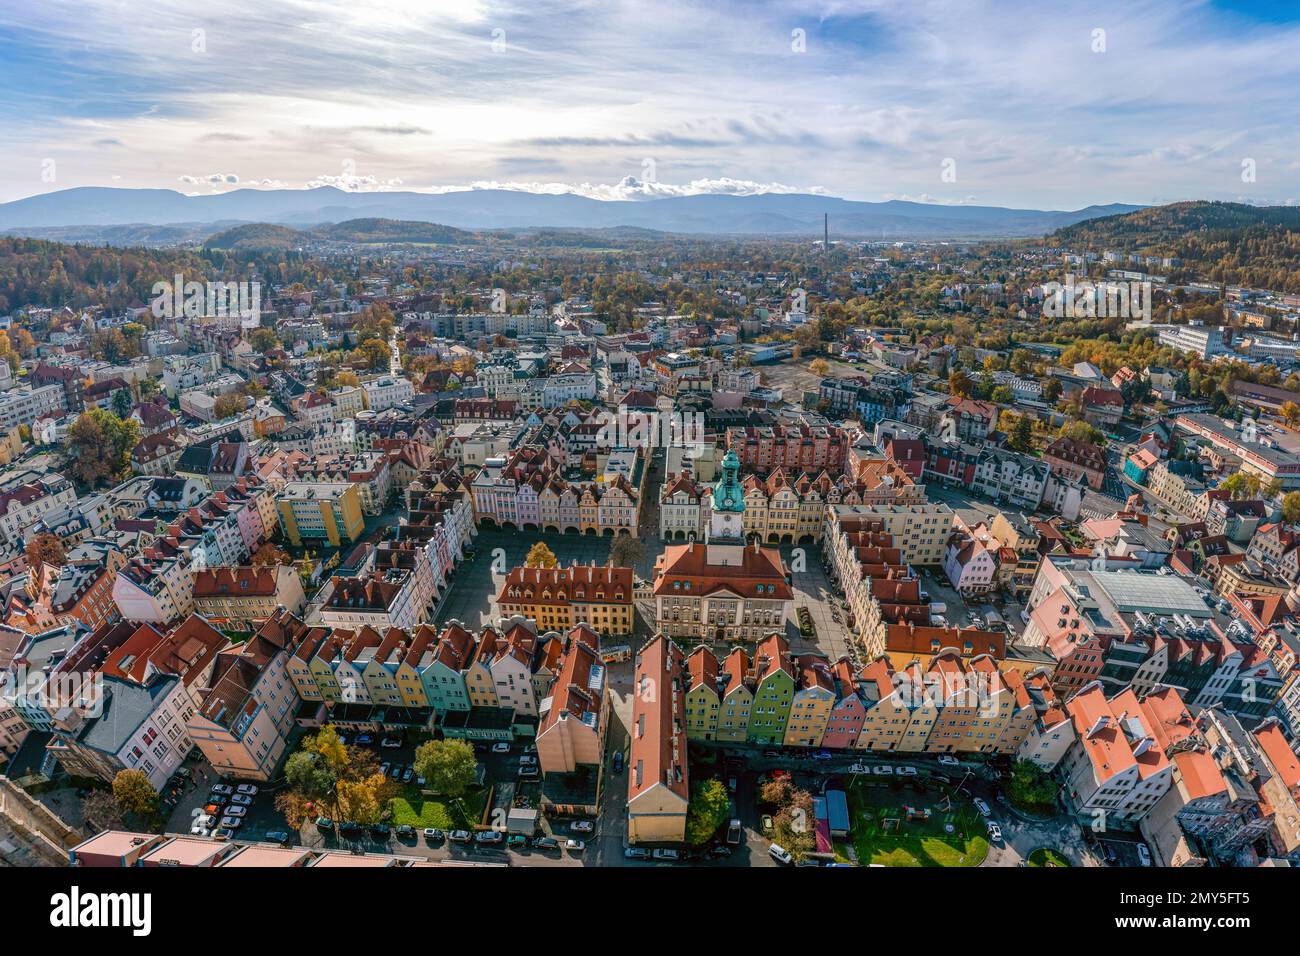 Jelenia Gora city center aerial view Stock Photo